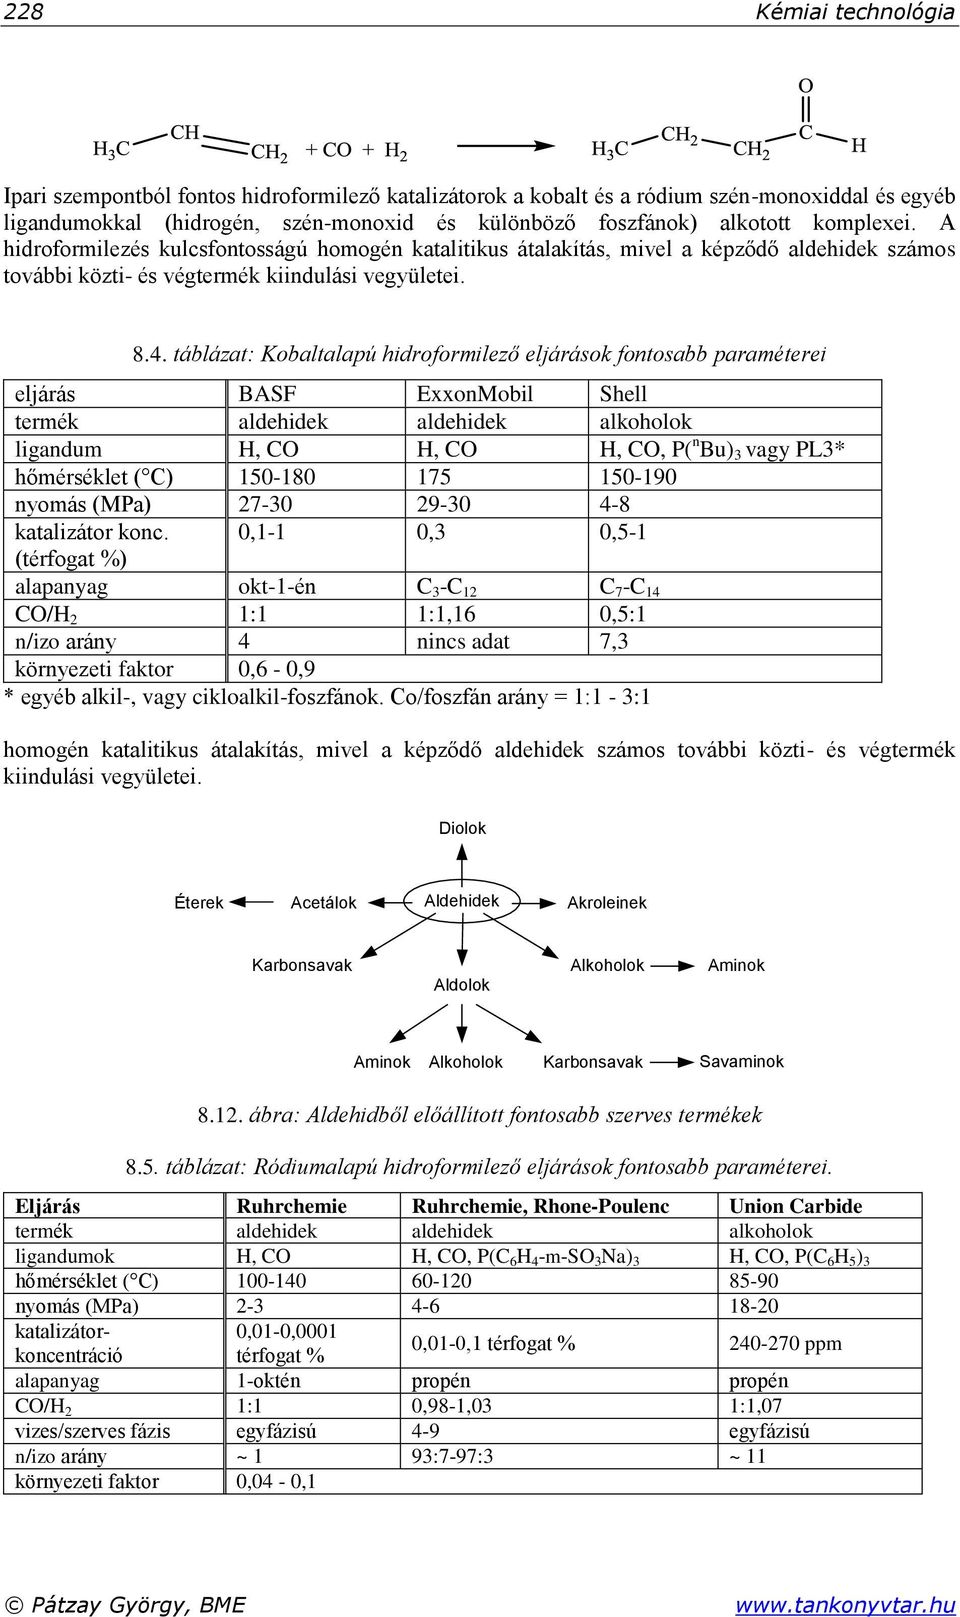 táblázat: Kobaltalapú hidroformilező eljárások fontosabb paraméterei eljárás BASF ExxonMobil Shell termék aldehidek aldehidek alkoholok ligandum H, CO H, CO H, CO, P( n Bu) 3 vagy PL3* hőmérséklet (